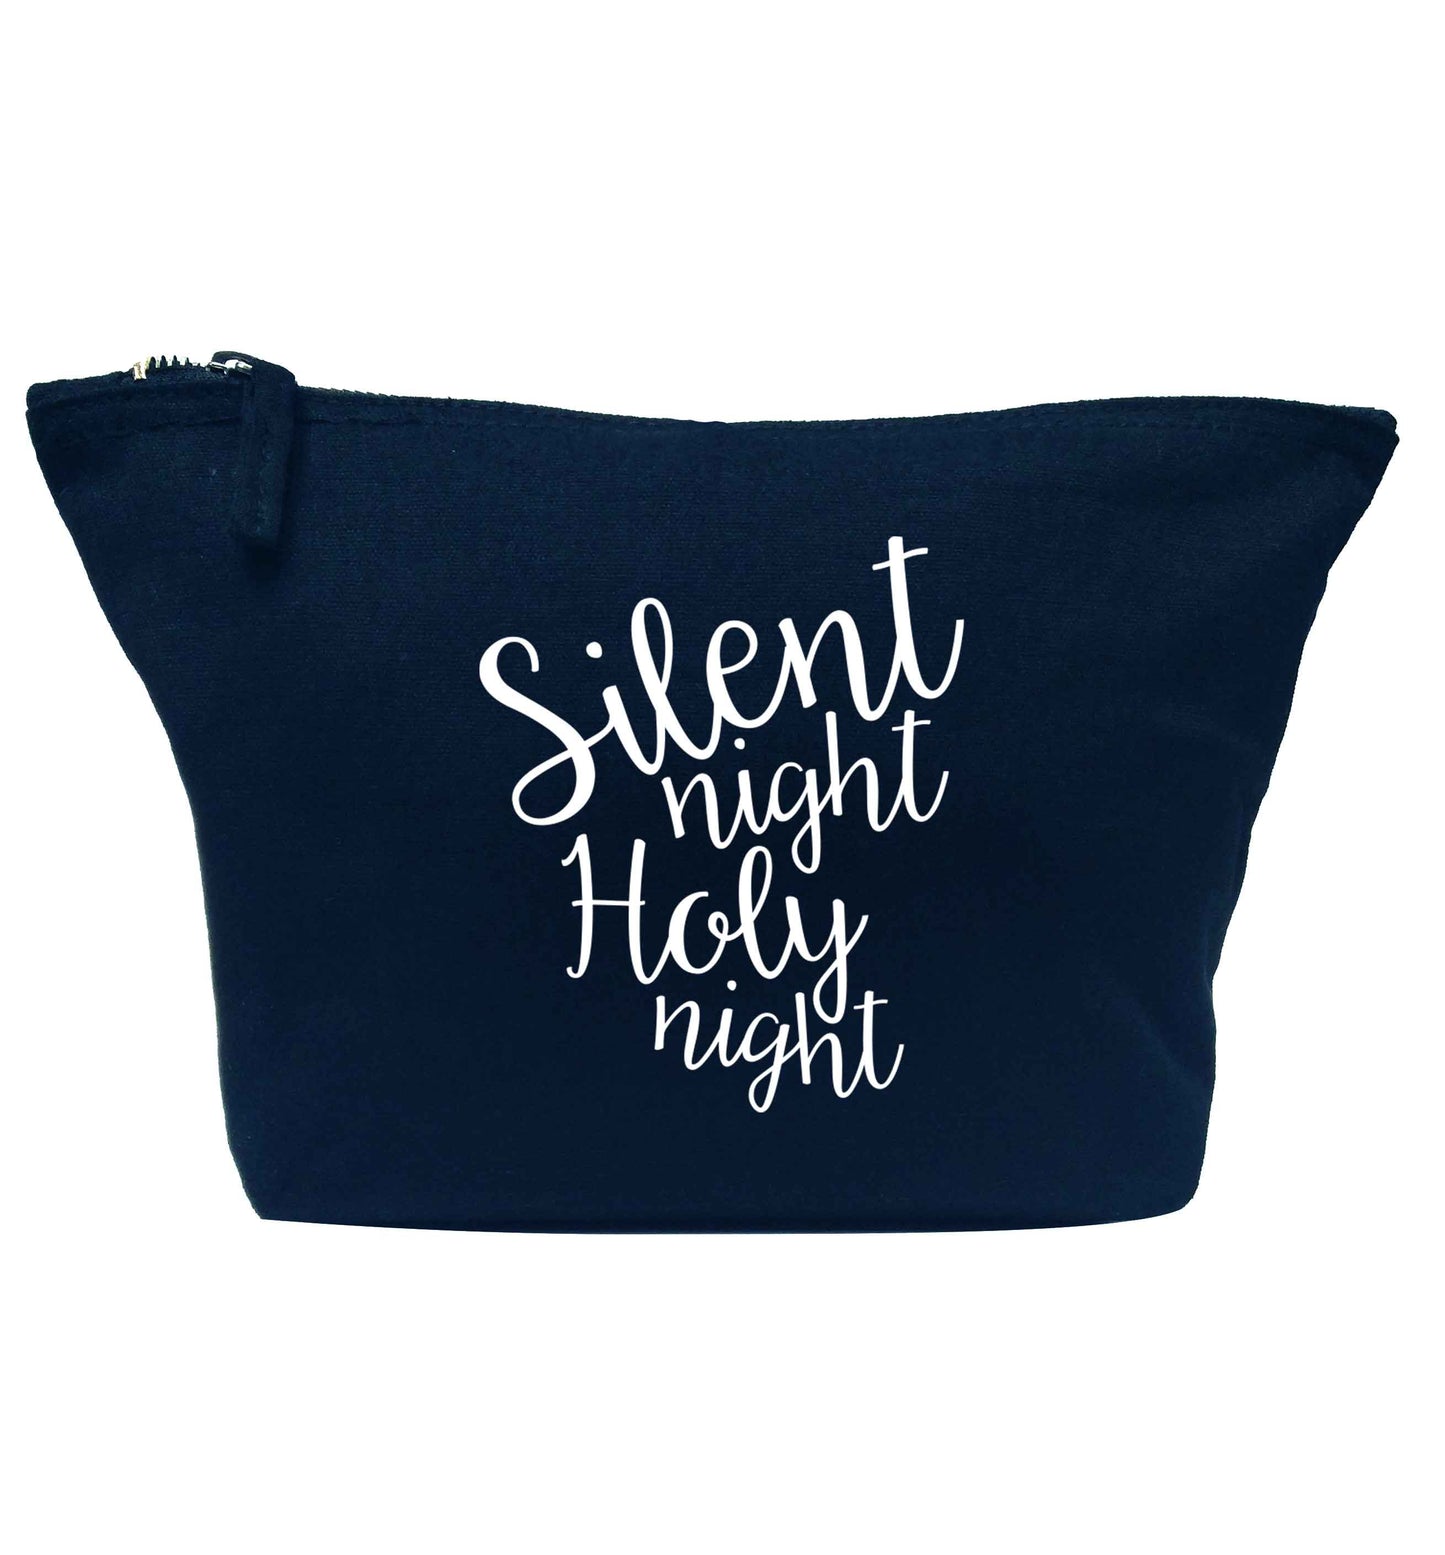 Silent night holy night navy makeup bag